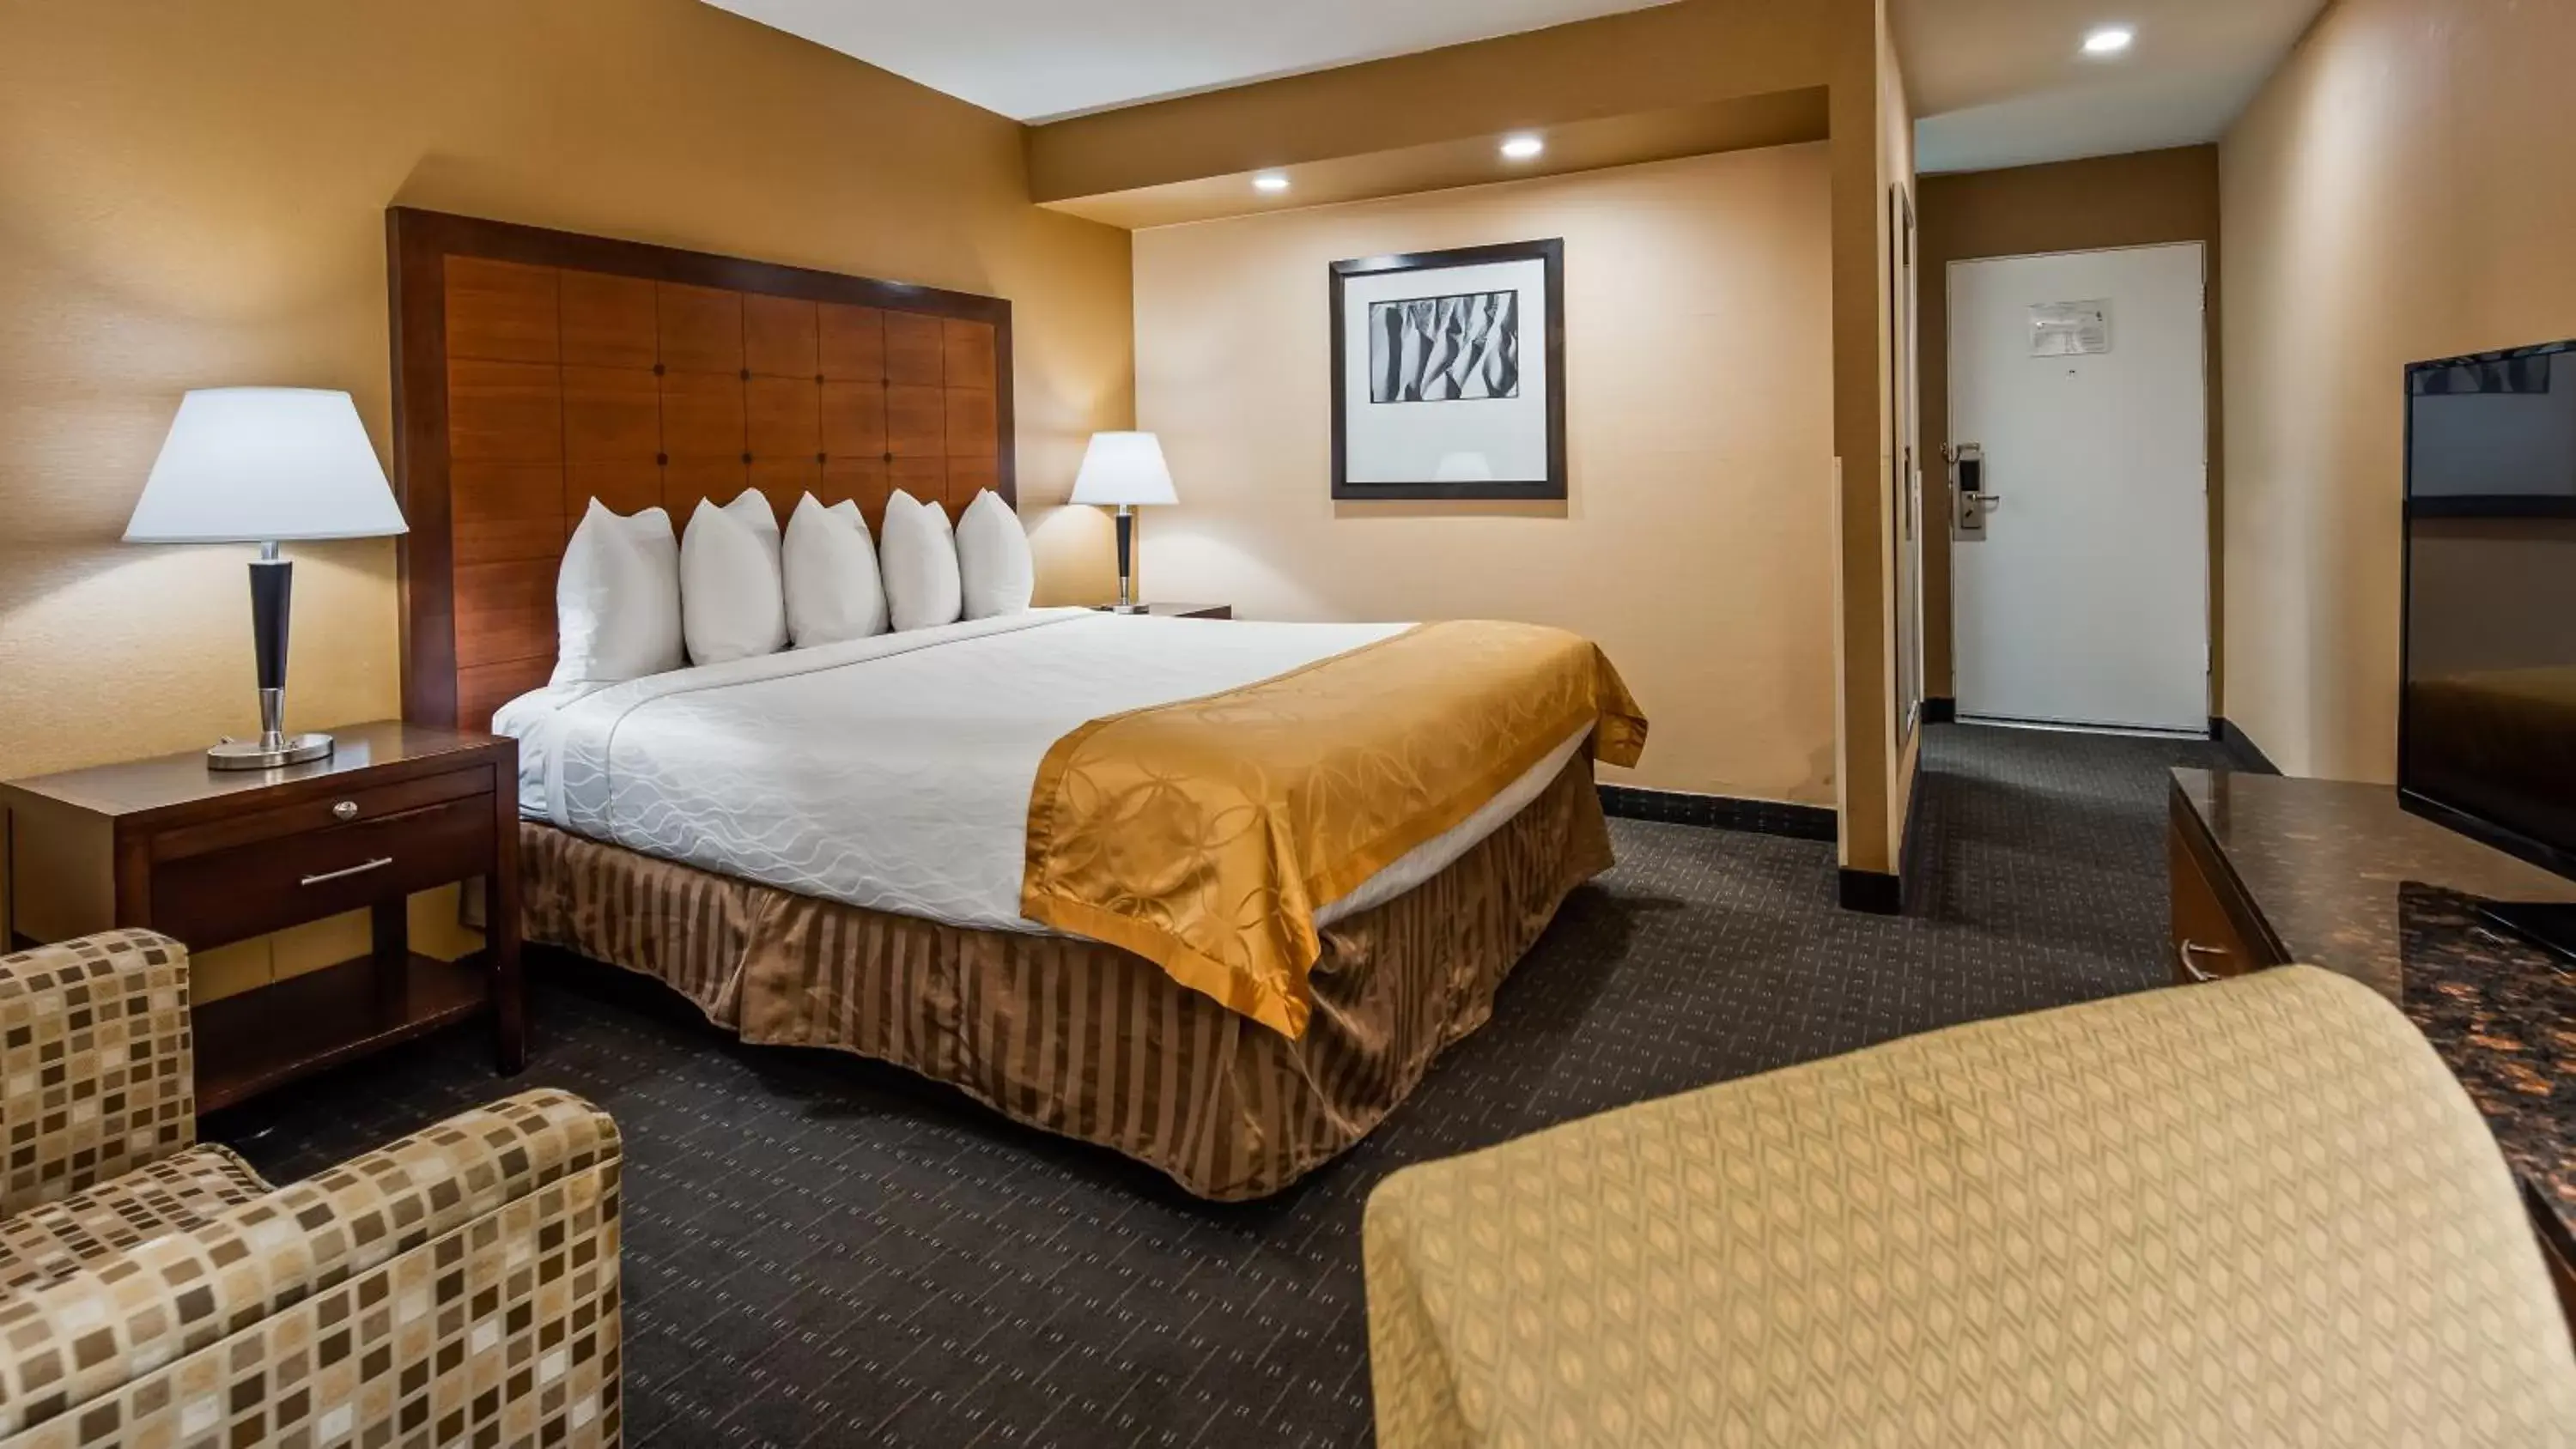 Bedroom, Bed in Best Western Inn at Palm Springs